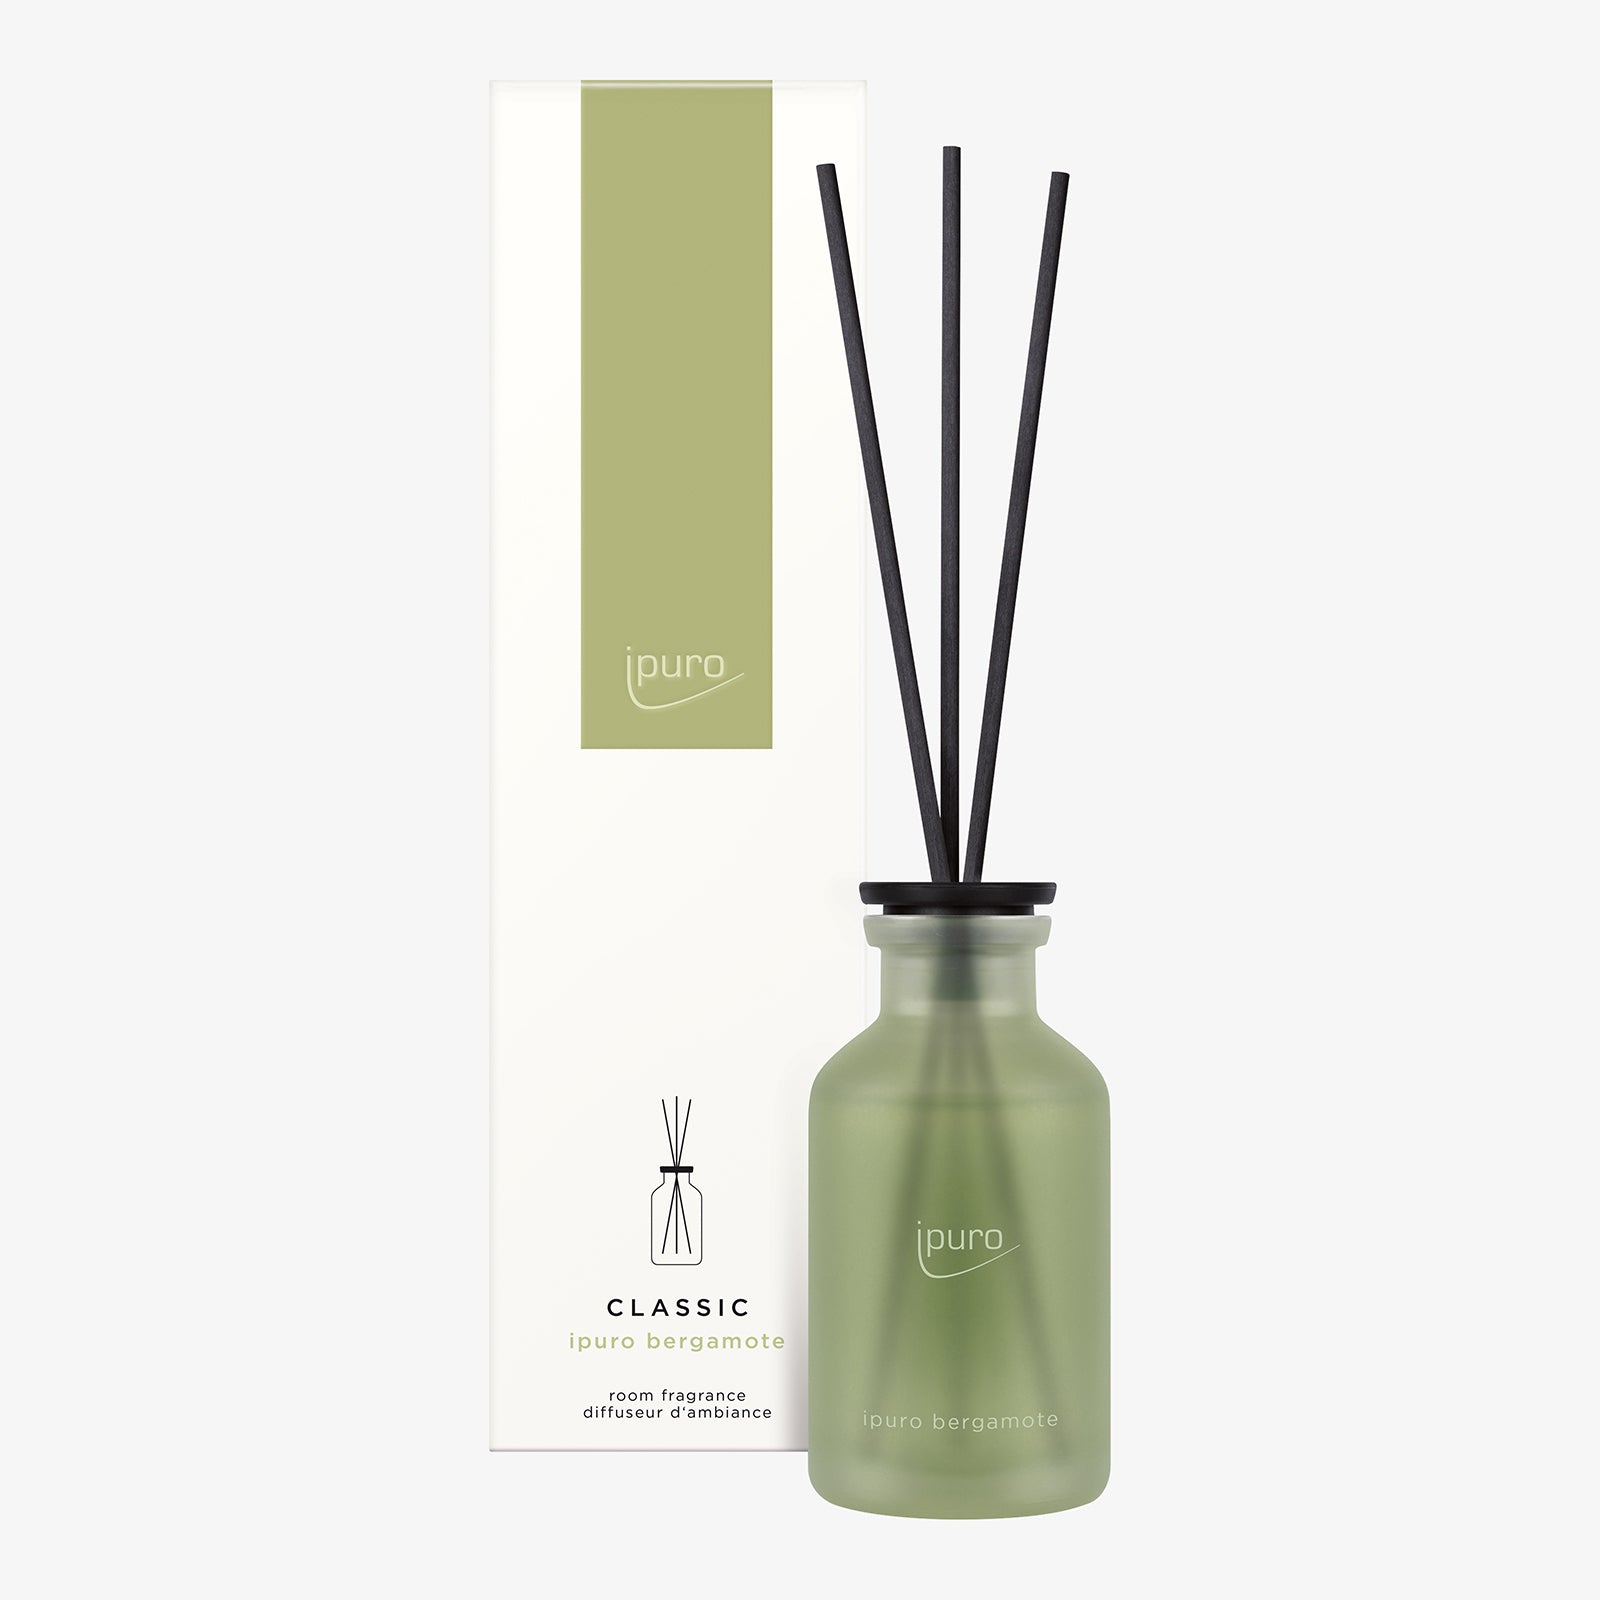 CLASSIC ipuro bergamote room fragrance – IPURO